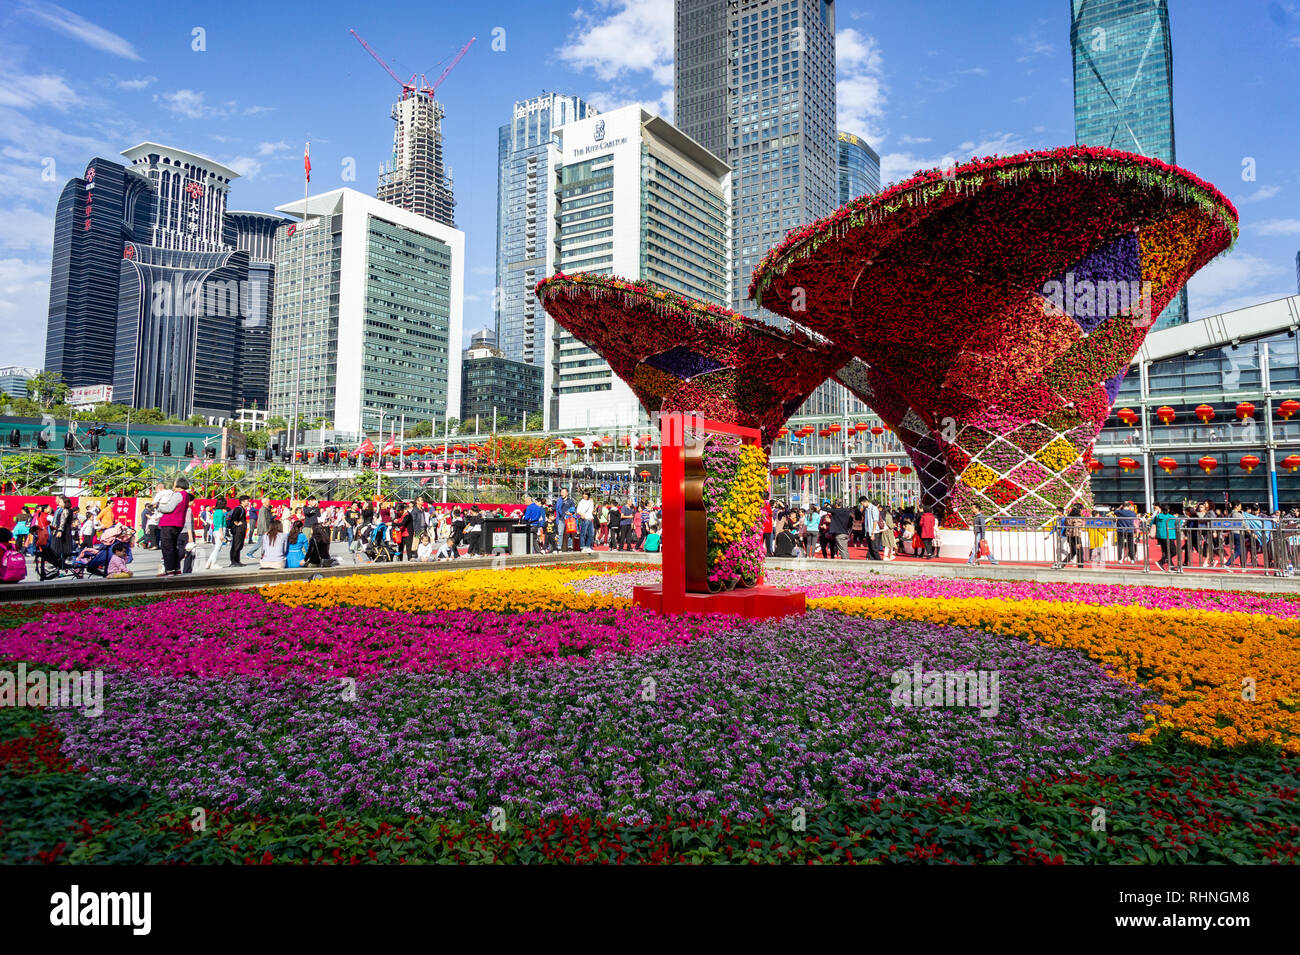 Grande struttura floreale display all'Anno Nuovo Cinese fiera dei fiori a Shenzhen, Cina. Foto Stock